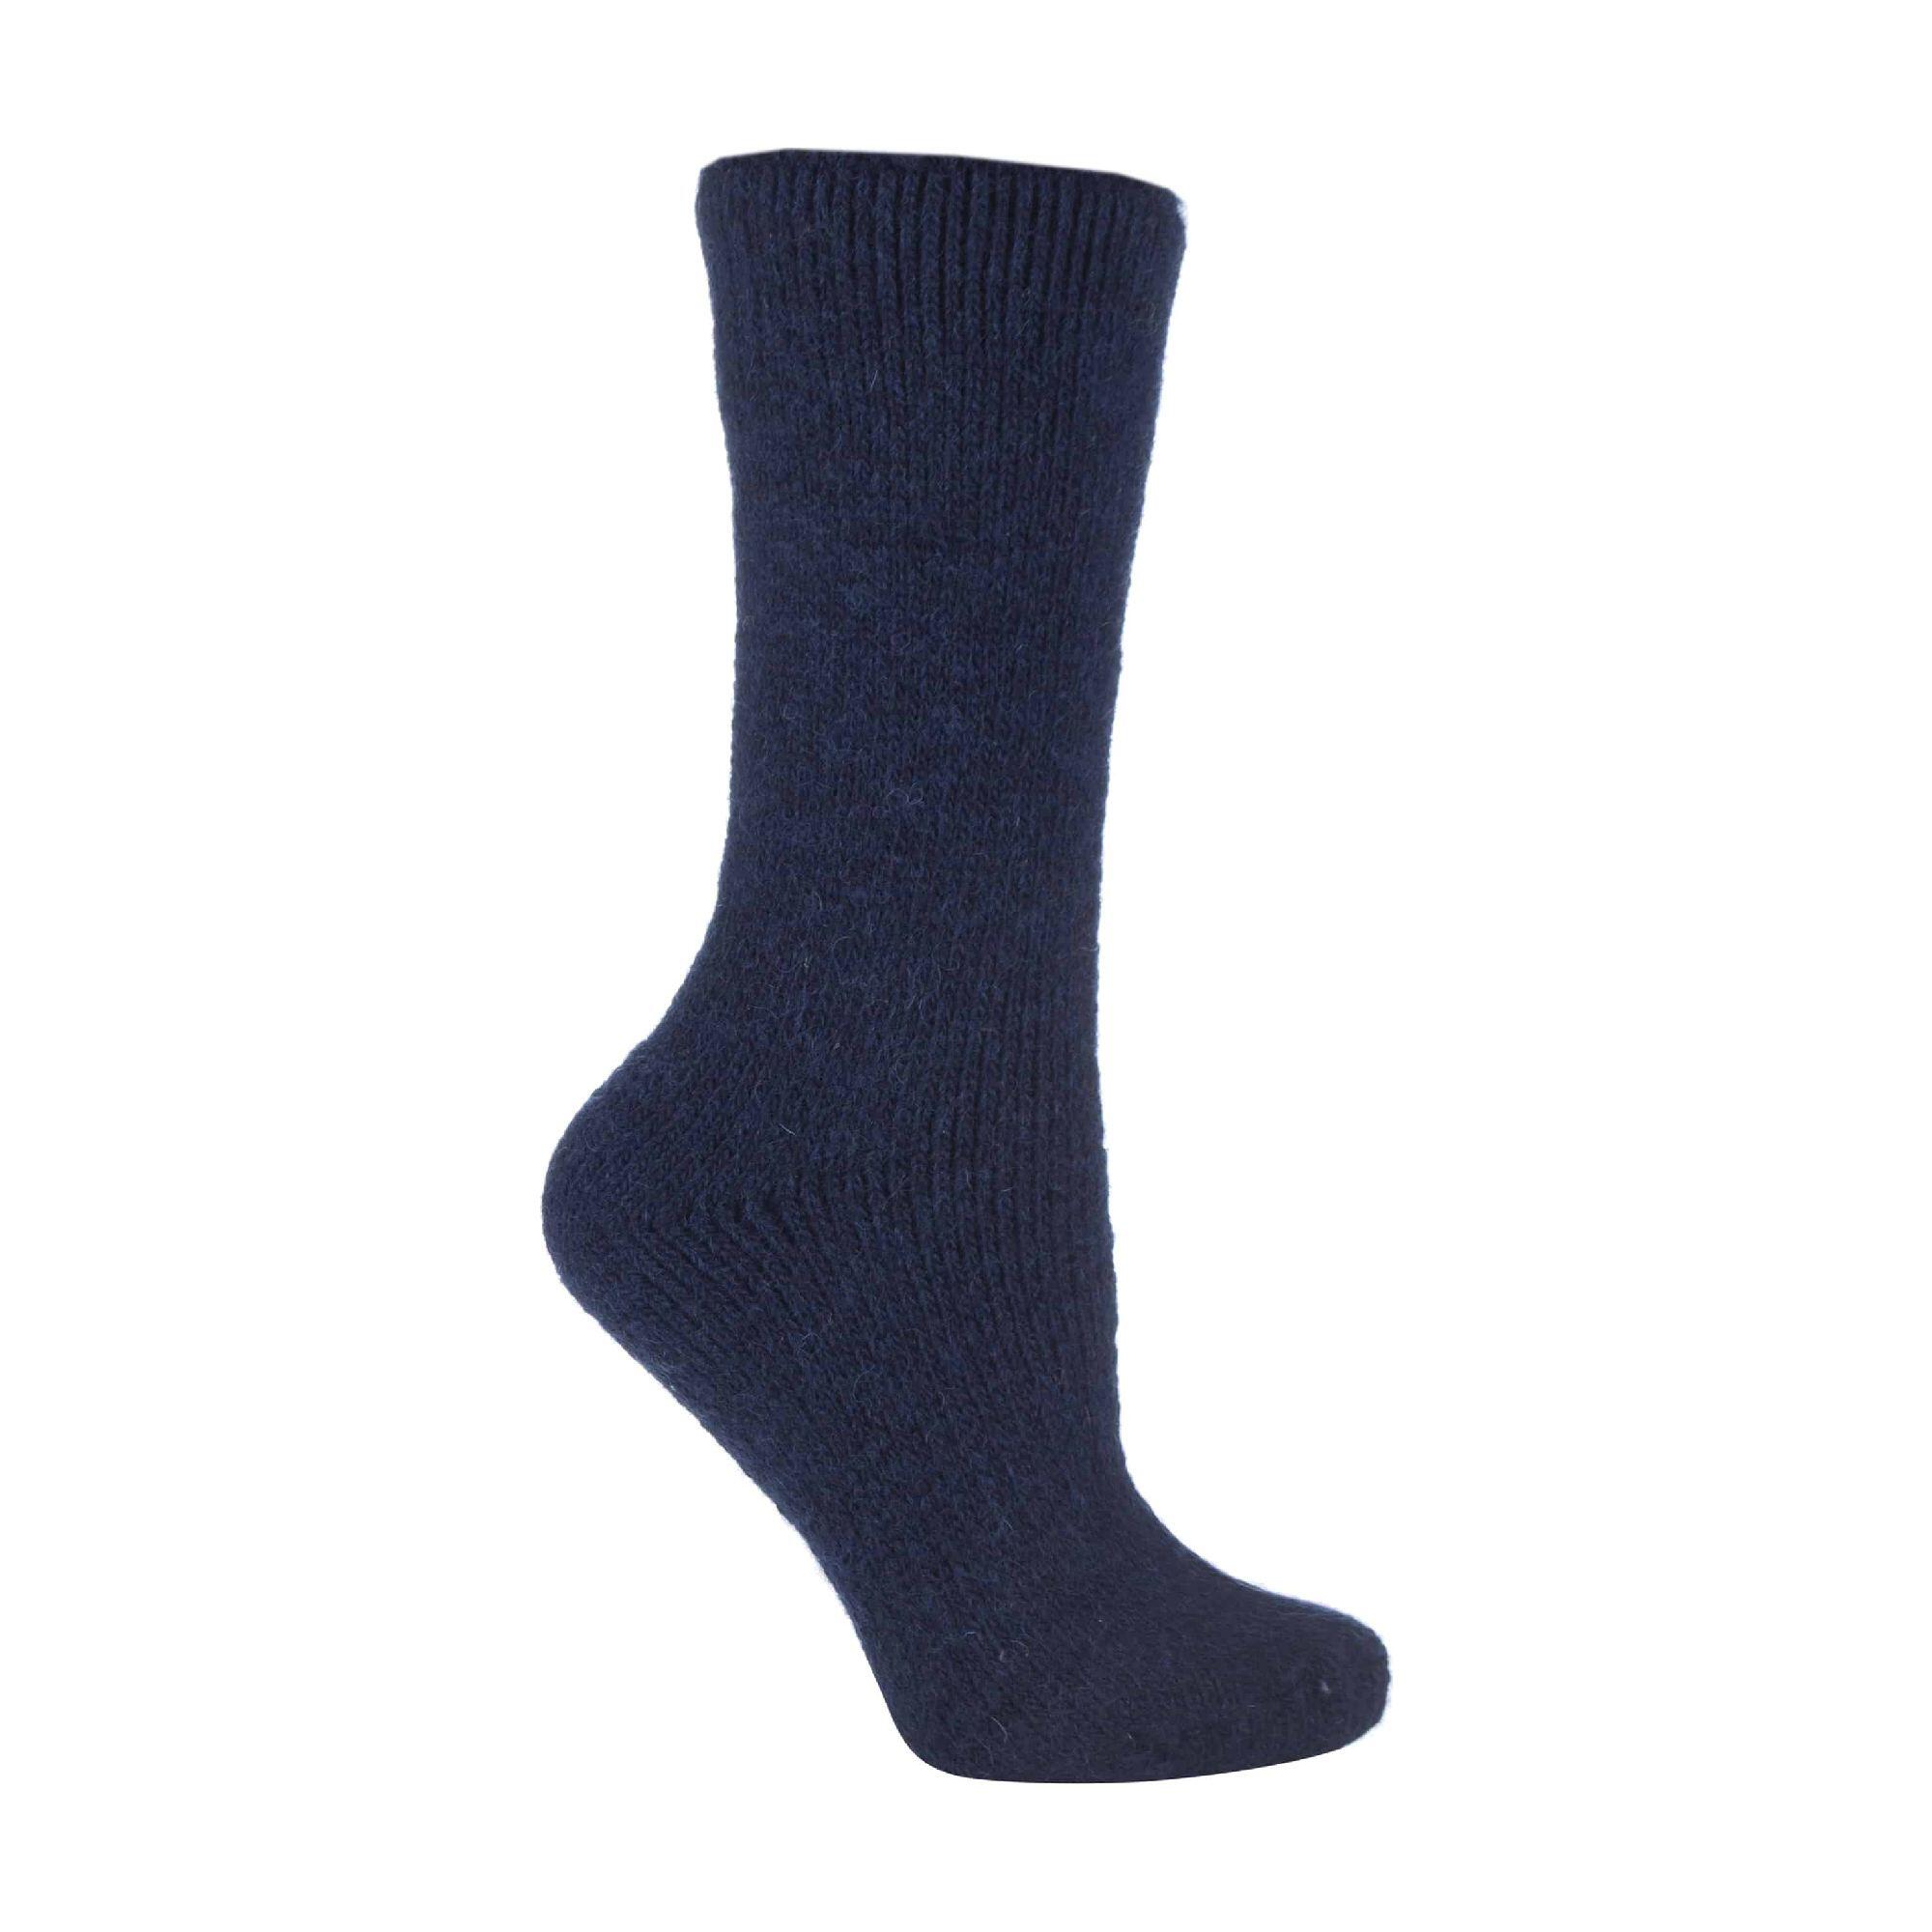 HEAT HOLDERS Ladies Winter Warm 2.7 TOG Wool Rich Thermal Socks